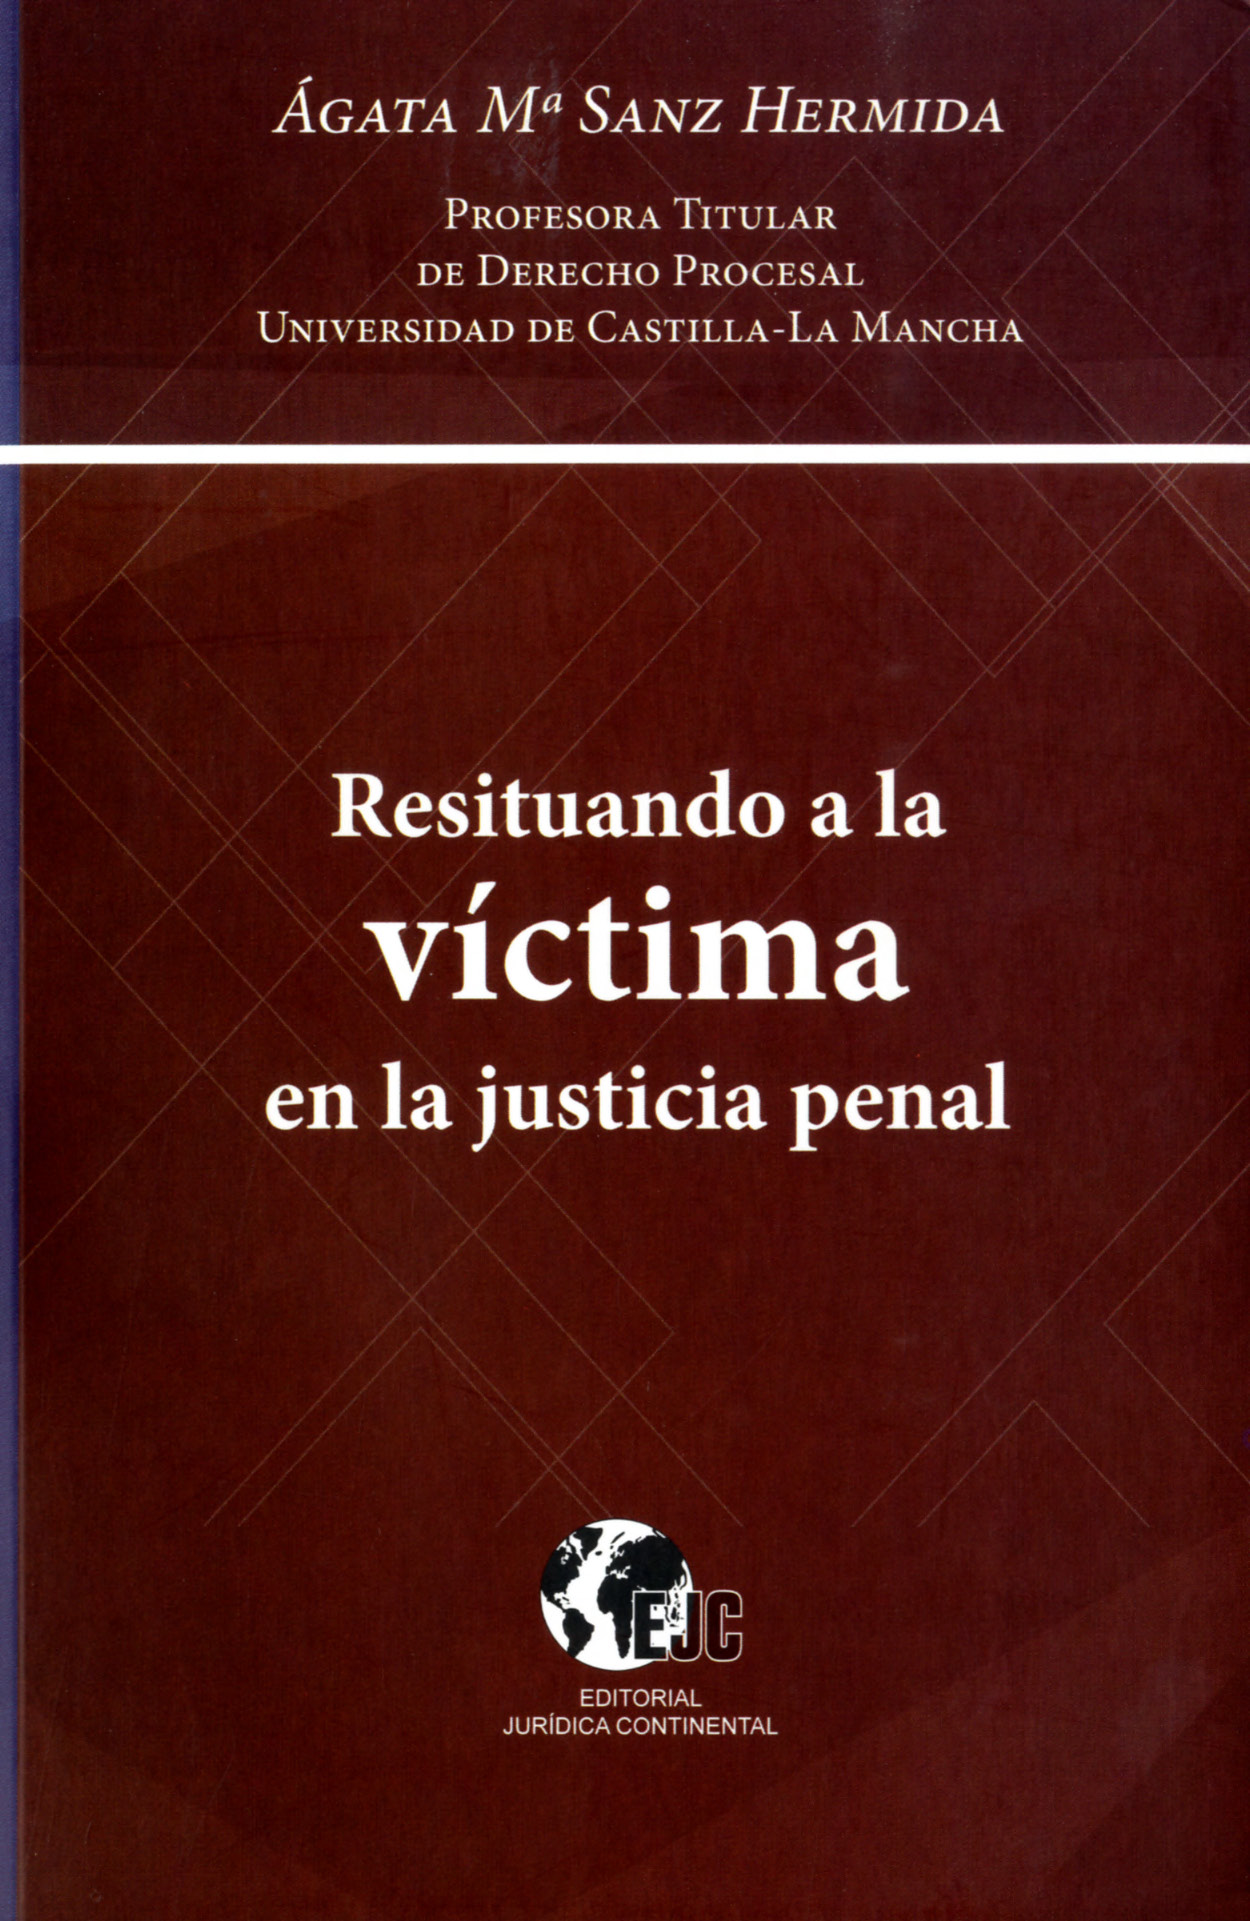 Imagen de portada del libro Resituando a la víctima en la justicia penal